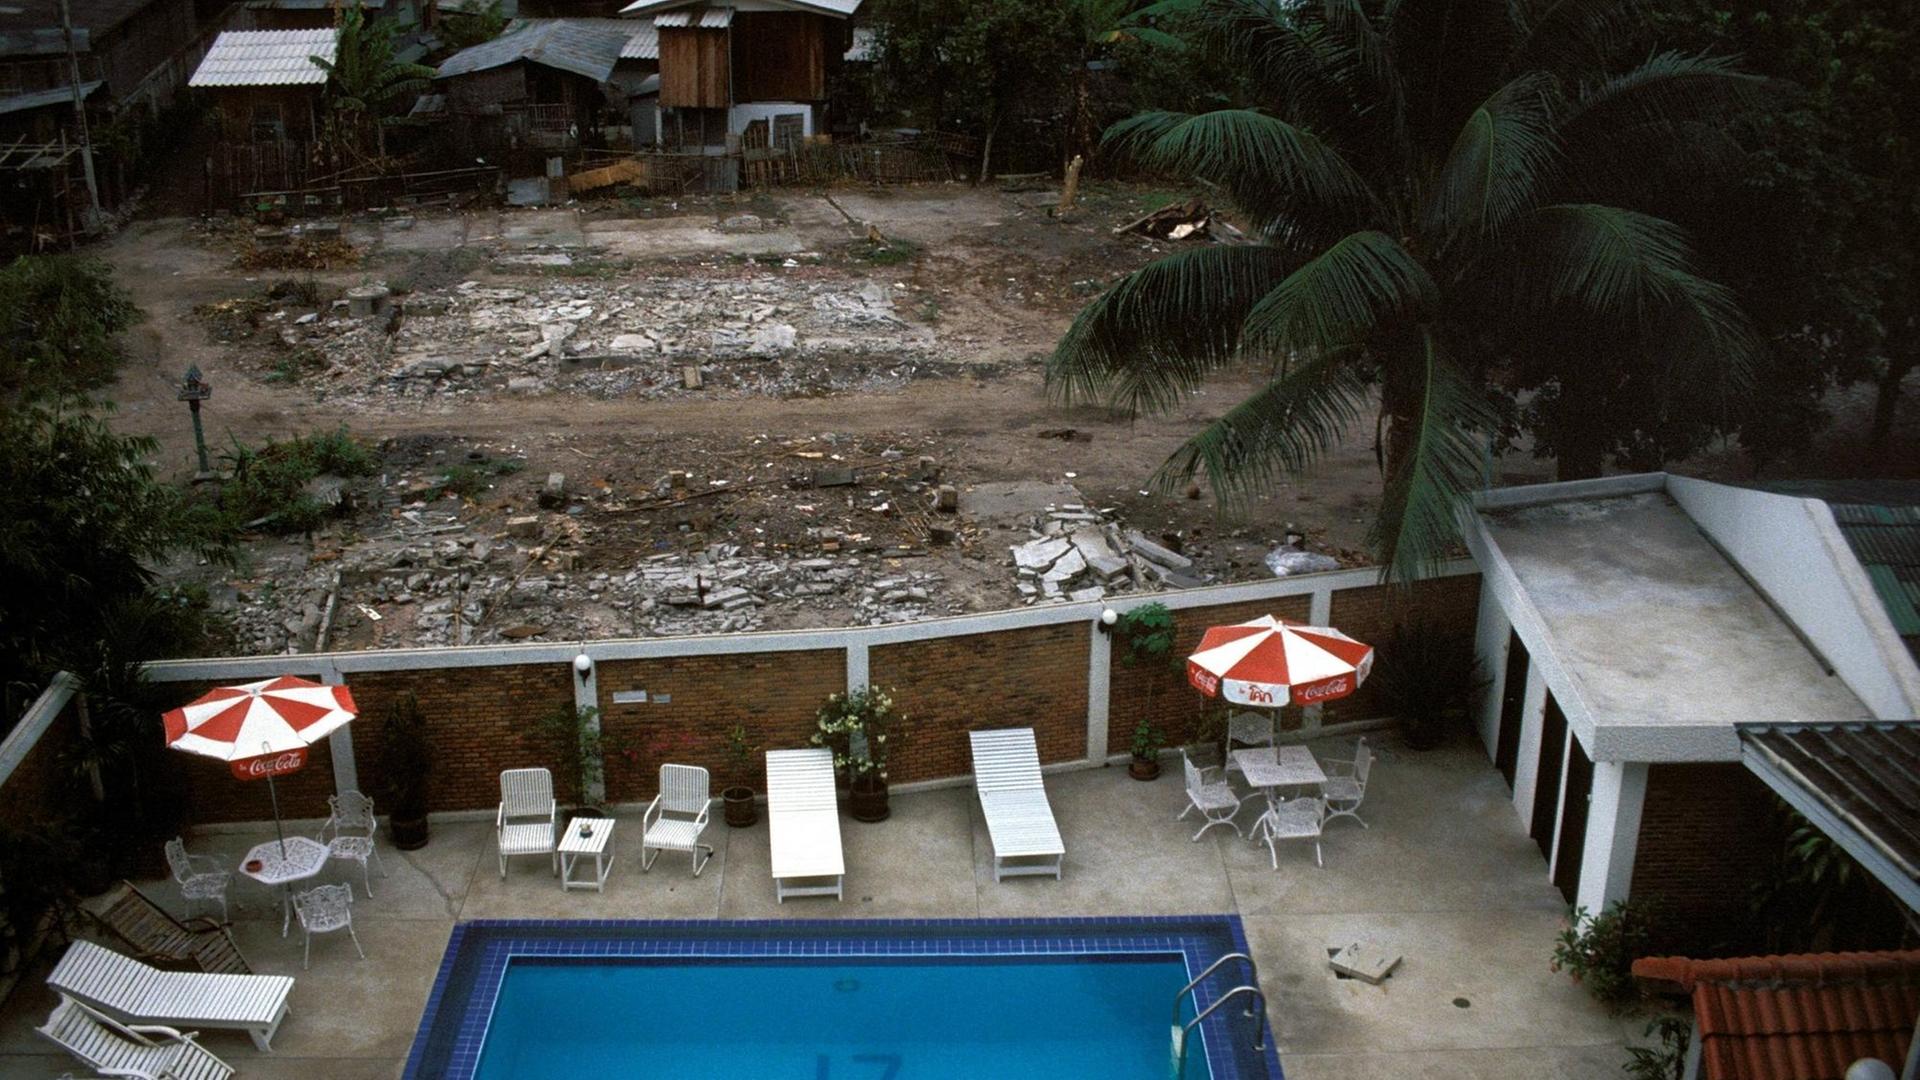 Blick auf den Poolbereich eines Hotels, der an ein thailändisches Armenviertel grenzt